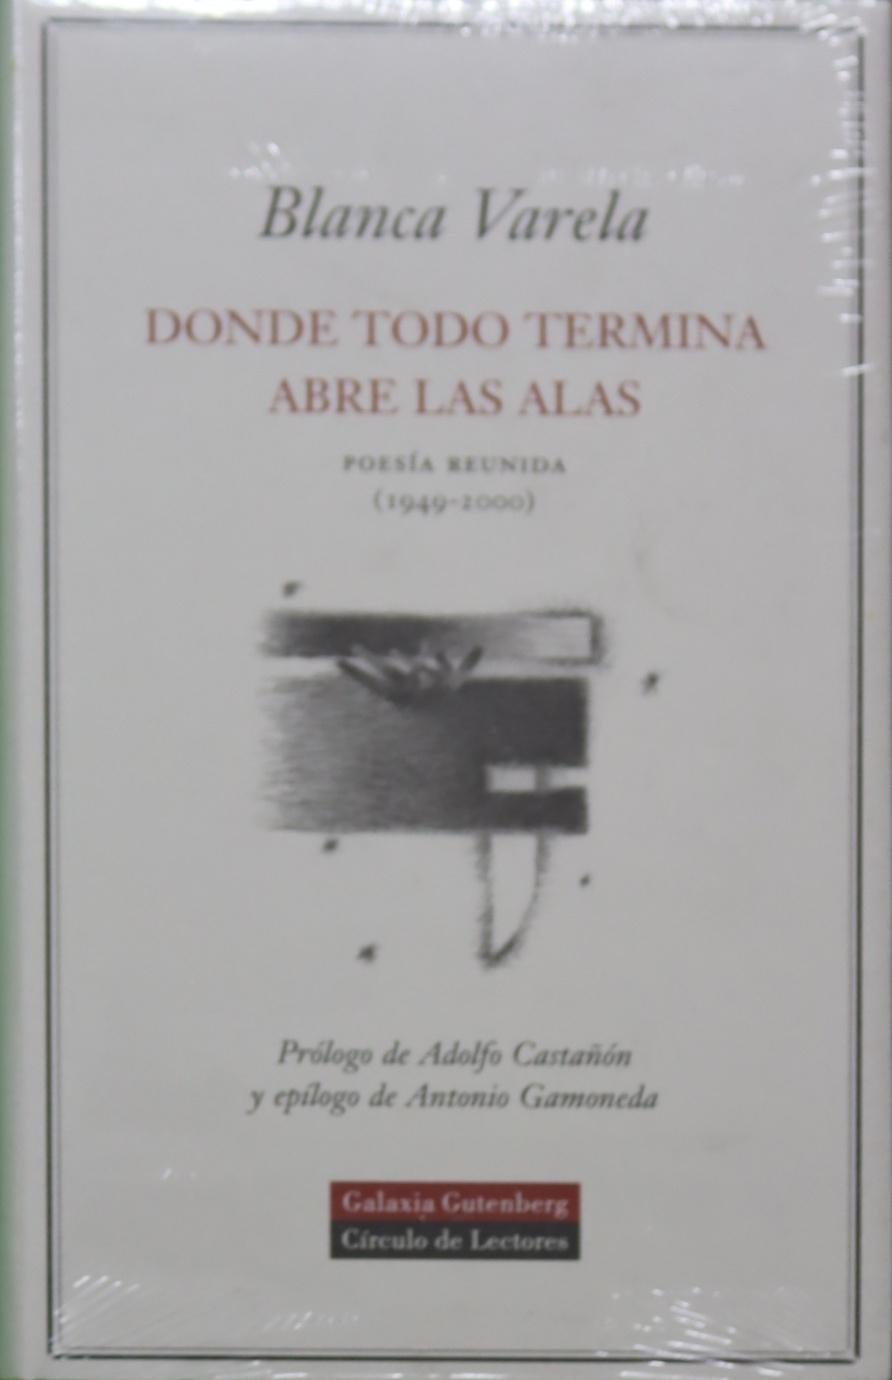 Donde todo termina abre las alas poesía reunida (1949-2000) - Varela, Blanca